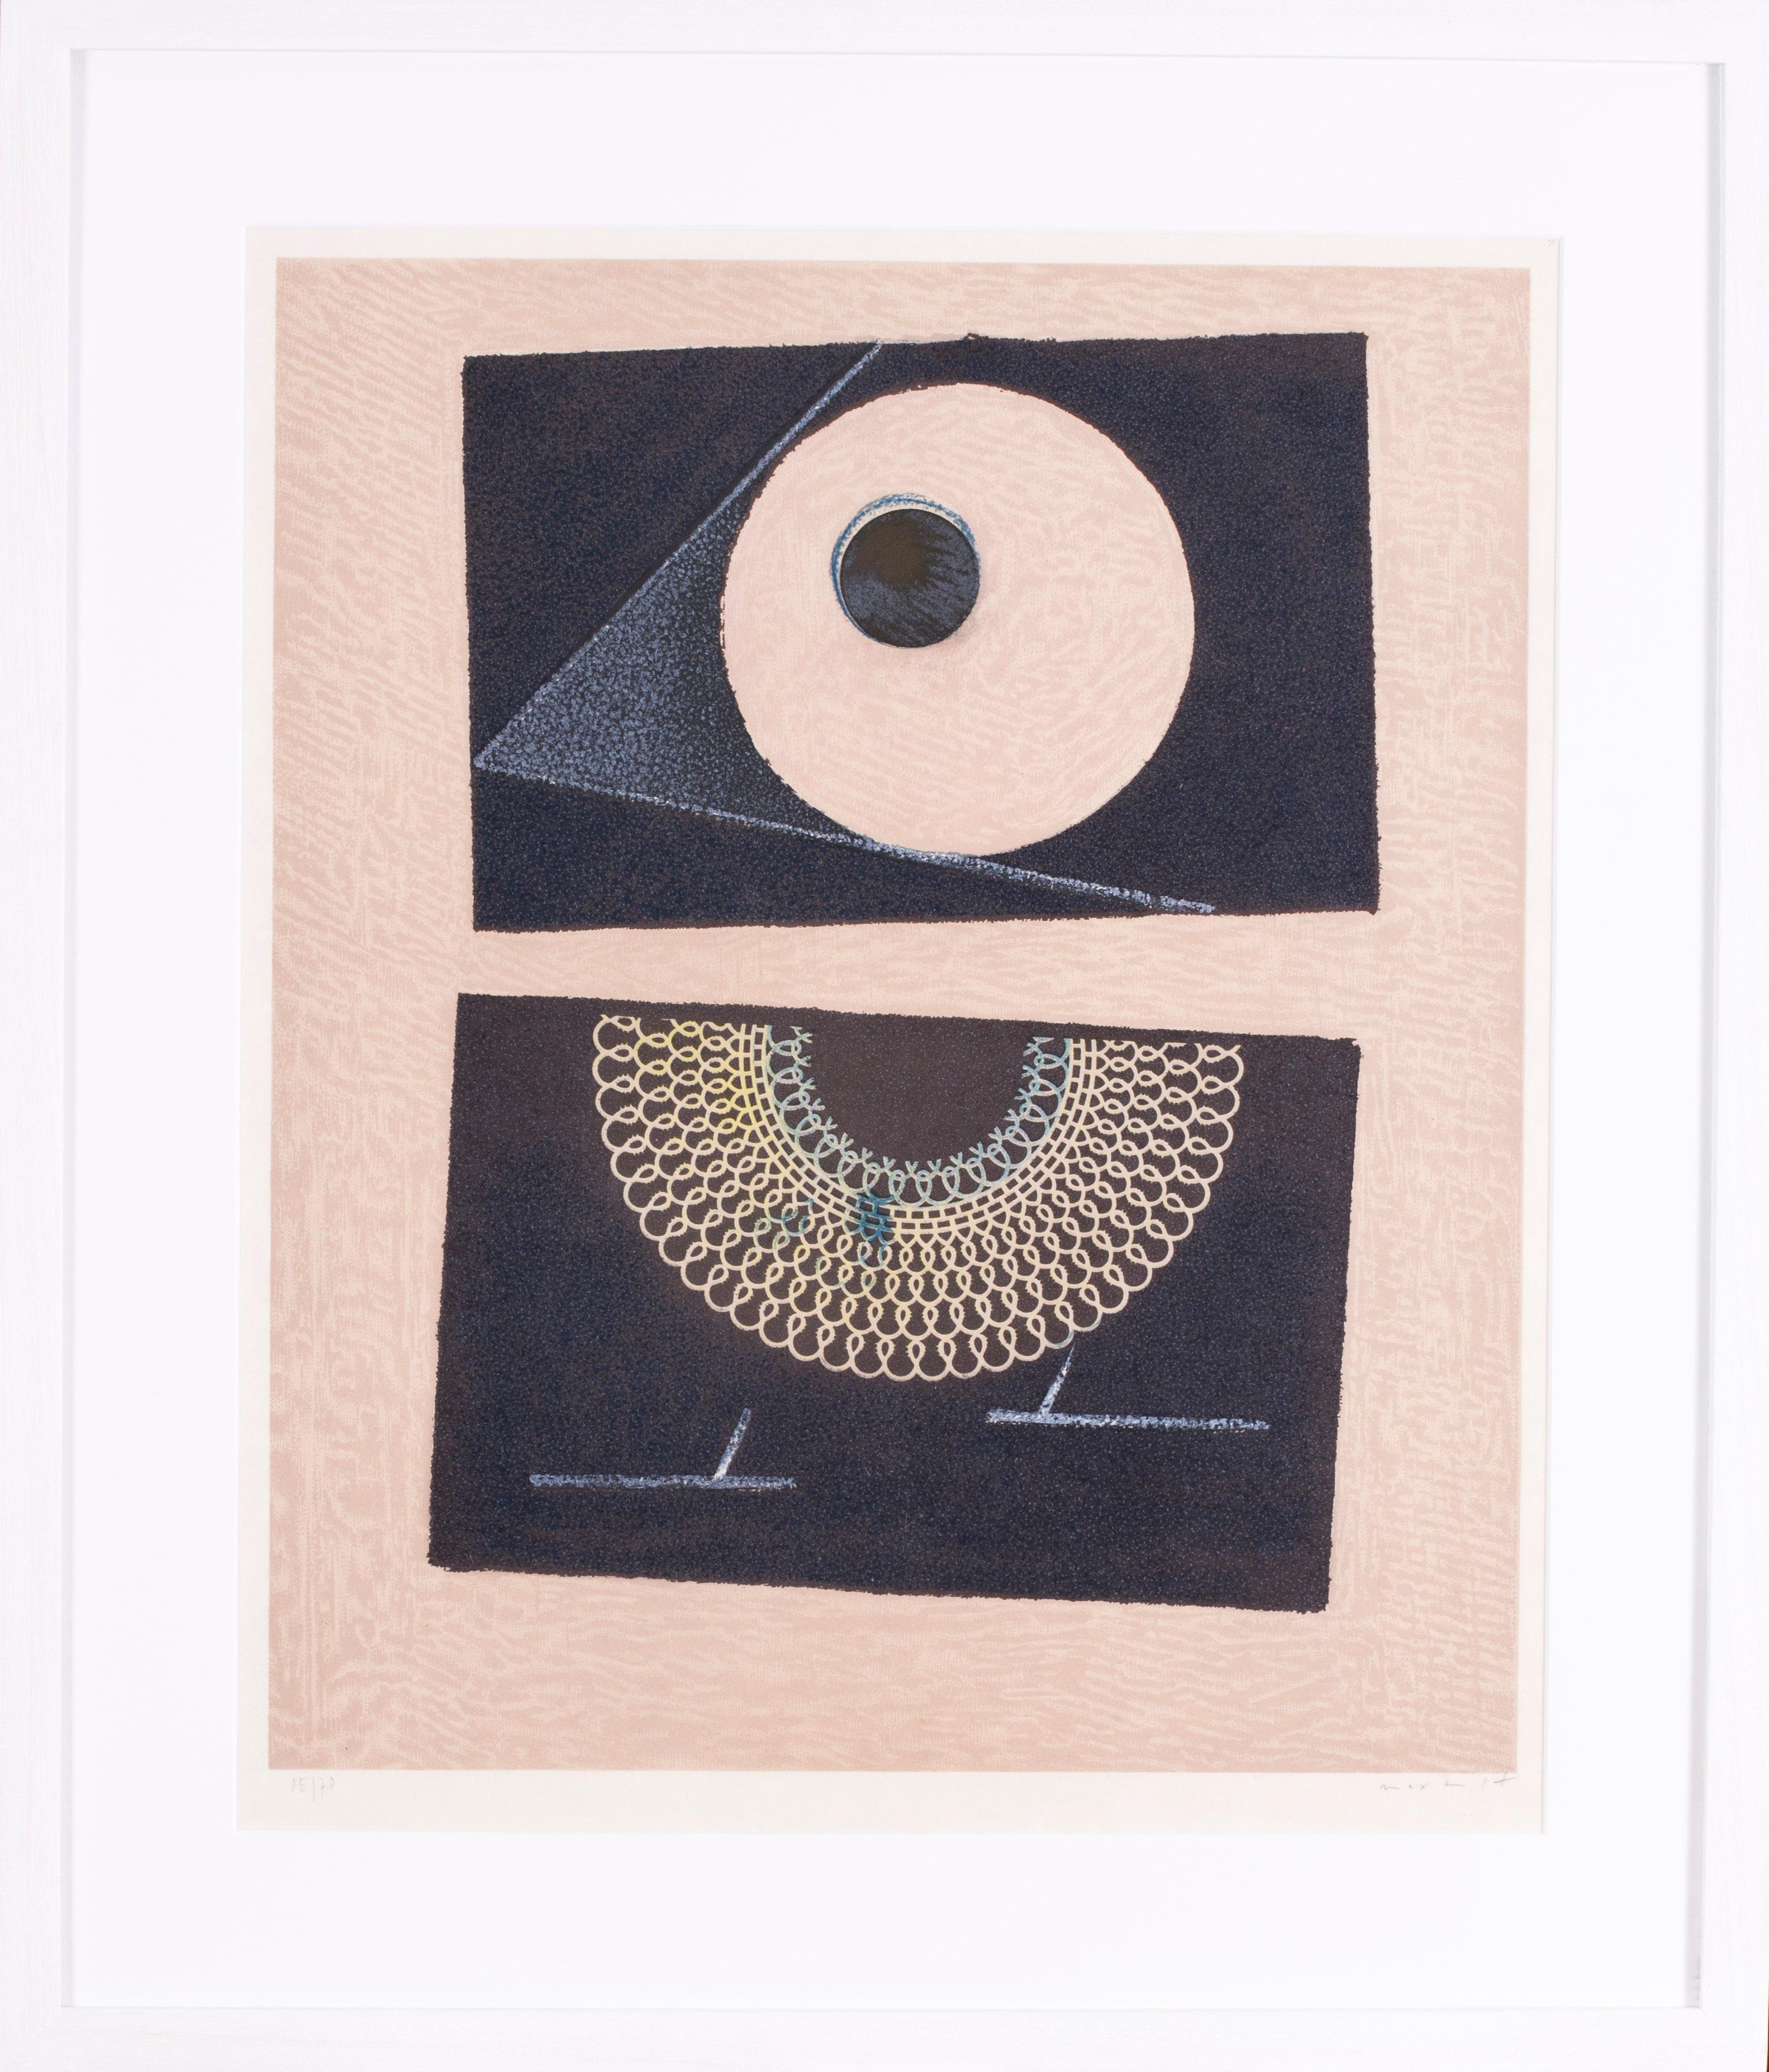 Max Ernst (Deutscher, 1891 - 1976)
Veilleuse au Seuil de Nos Terrassements Dent Prompte VI
Farblithographie
Signiert und nummeriert mit Bleistift "15/70 Max Ernst" (unterer Rand)
25.3/4 x 22 Zoll. (65,3 x 56 cm.) (einschließlich Rahmen)

Dies ist